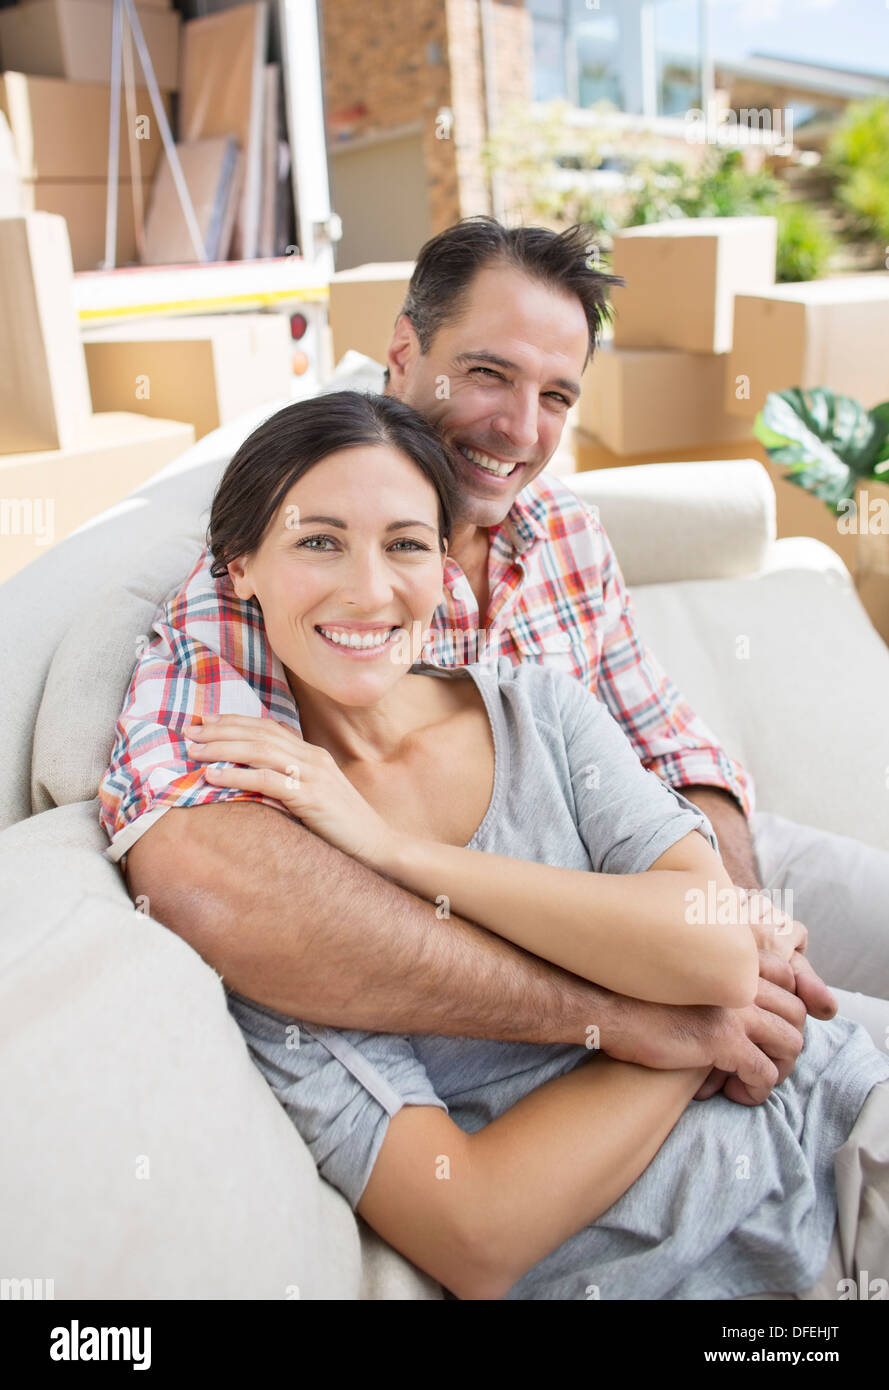 Portrait of smiling couple sitting on sofa in driveway près de camion de déménagement Banque D'Images